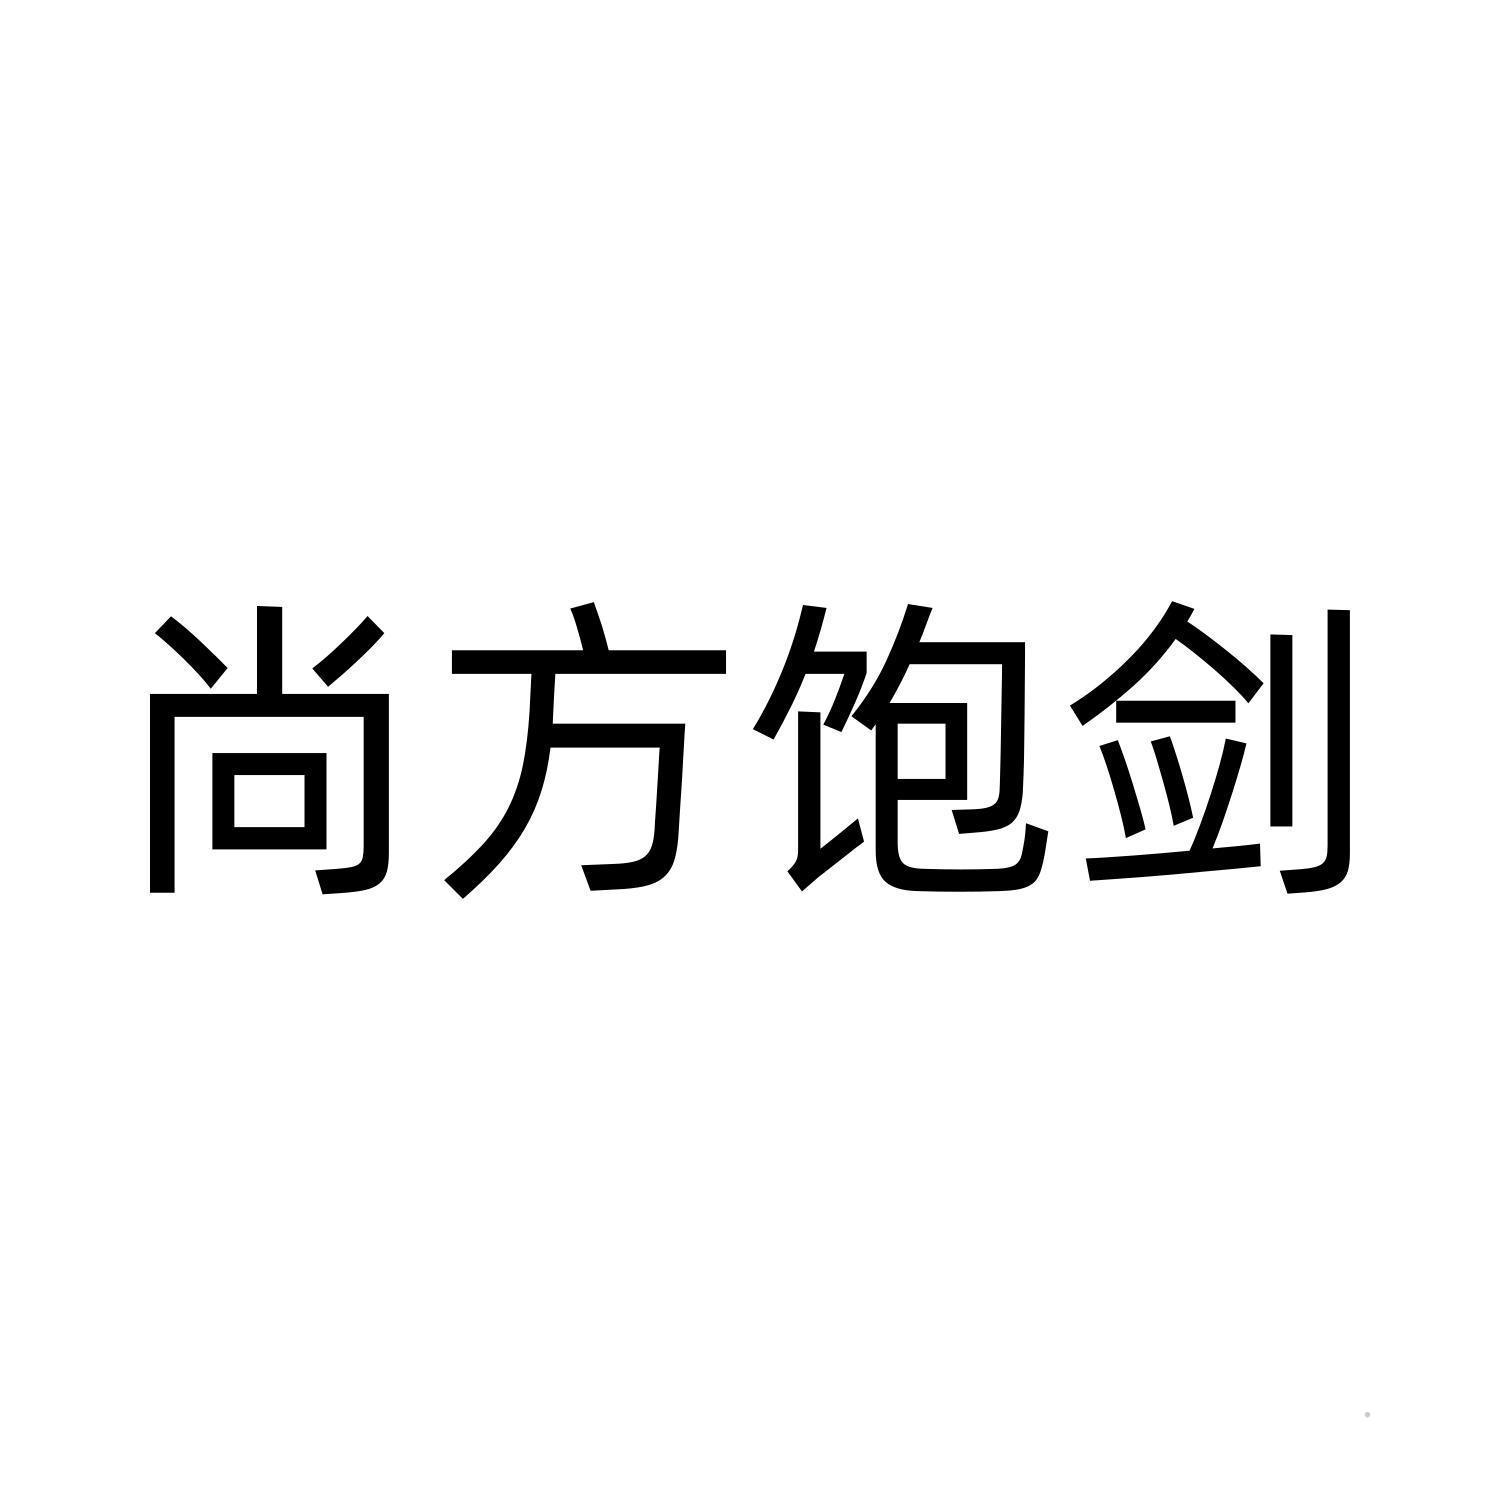 尚方饱剑logo